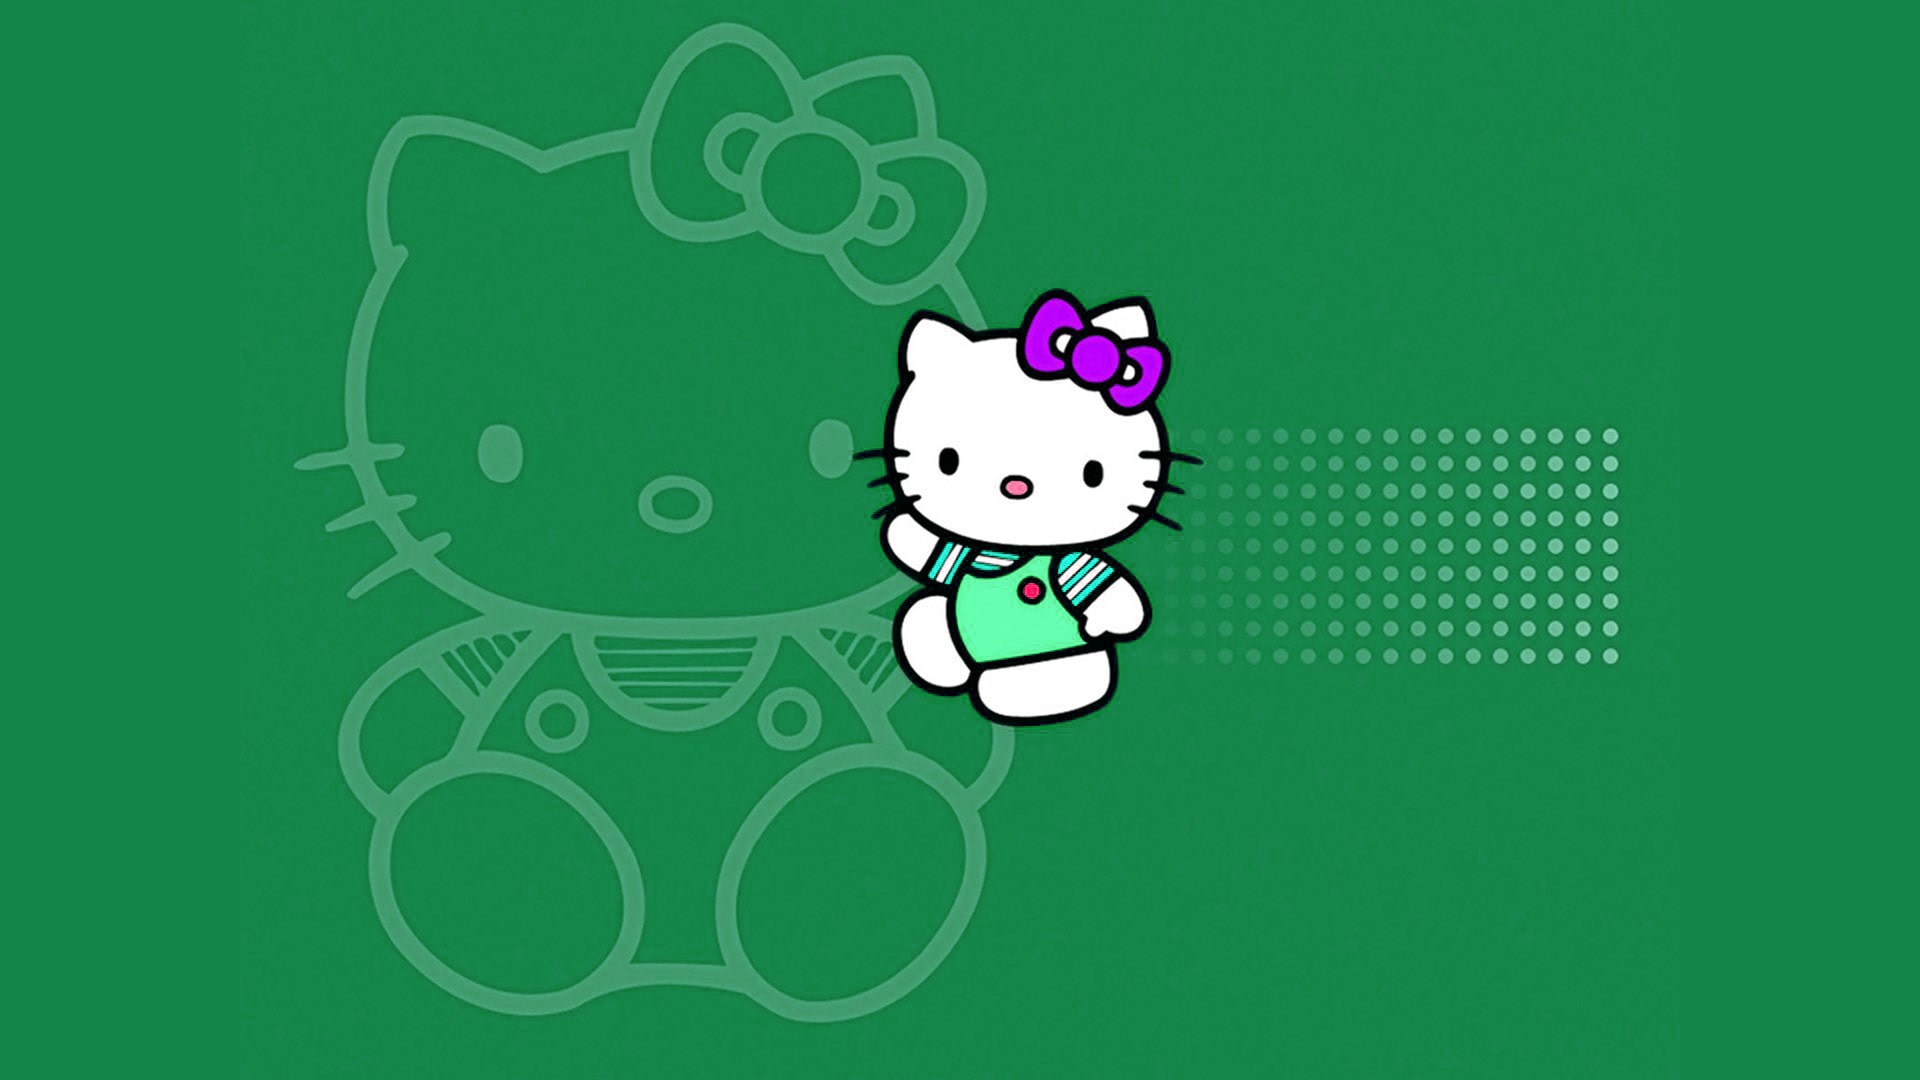 Hello Kitty Laptop Wallpaper